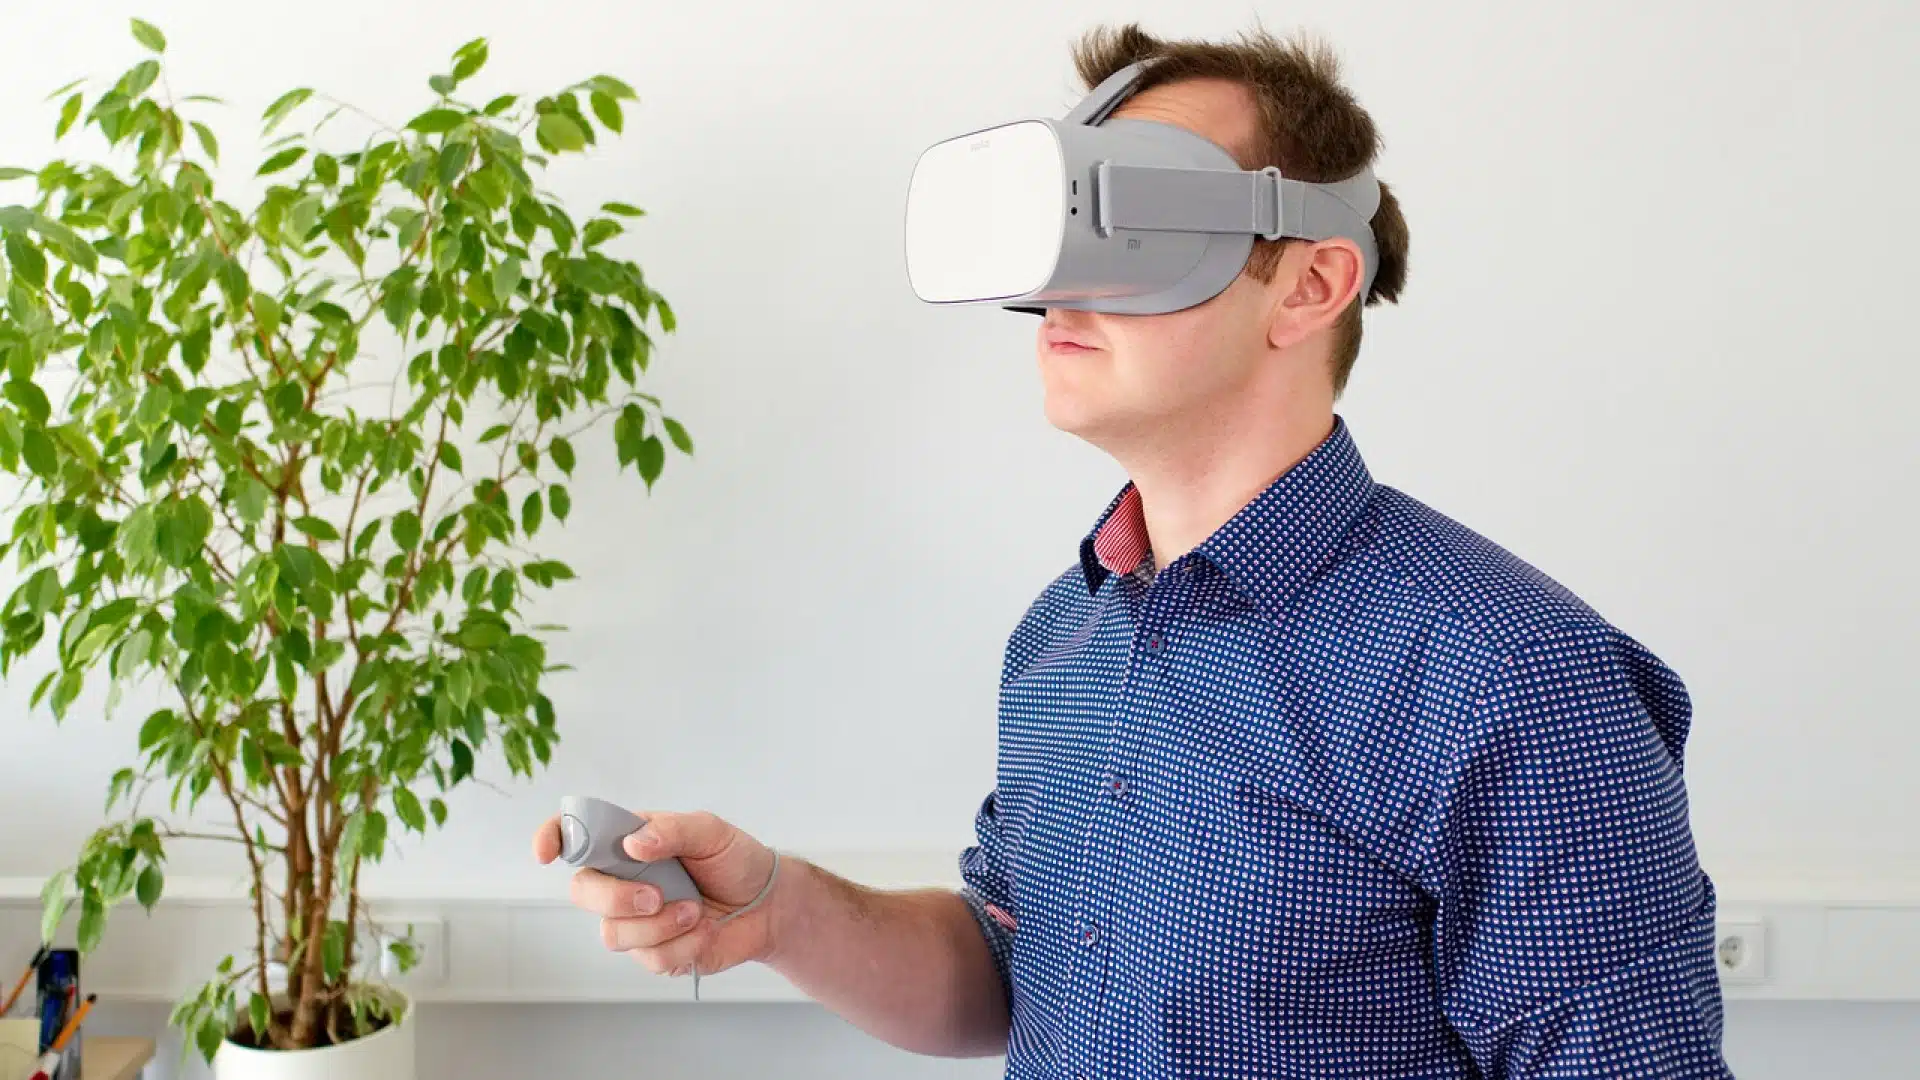 Spécialistes de l’immobilier : et si vous pensiez à la réalité virtuelle ?